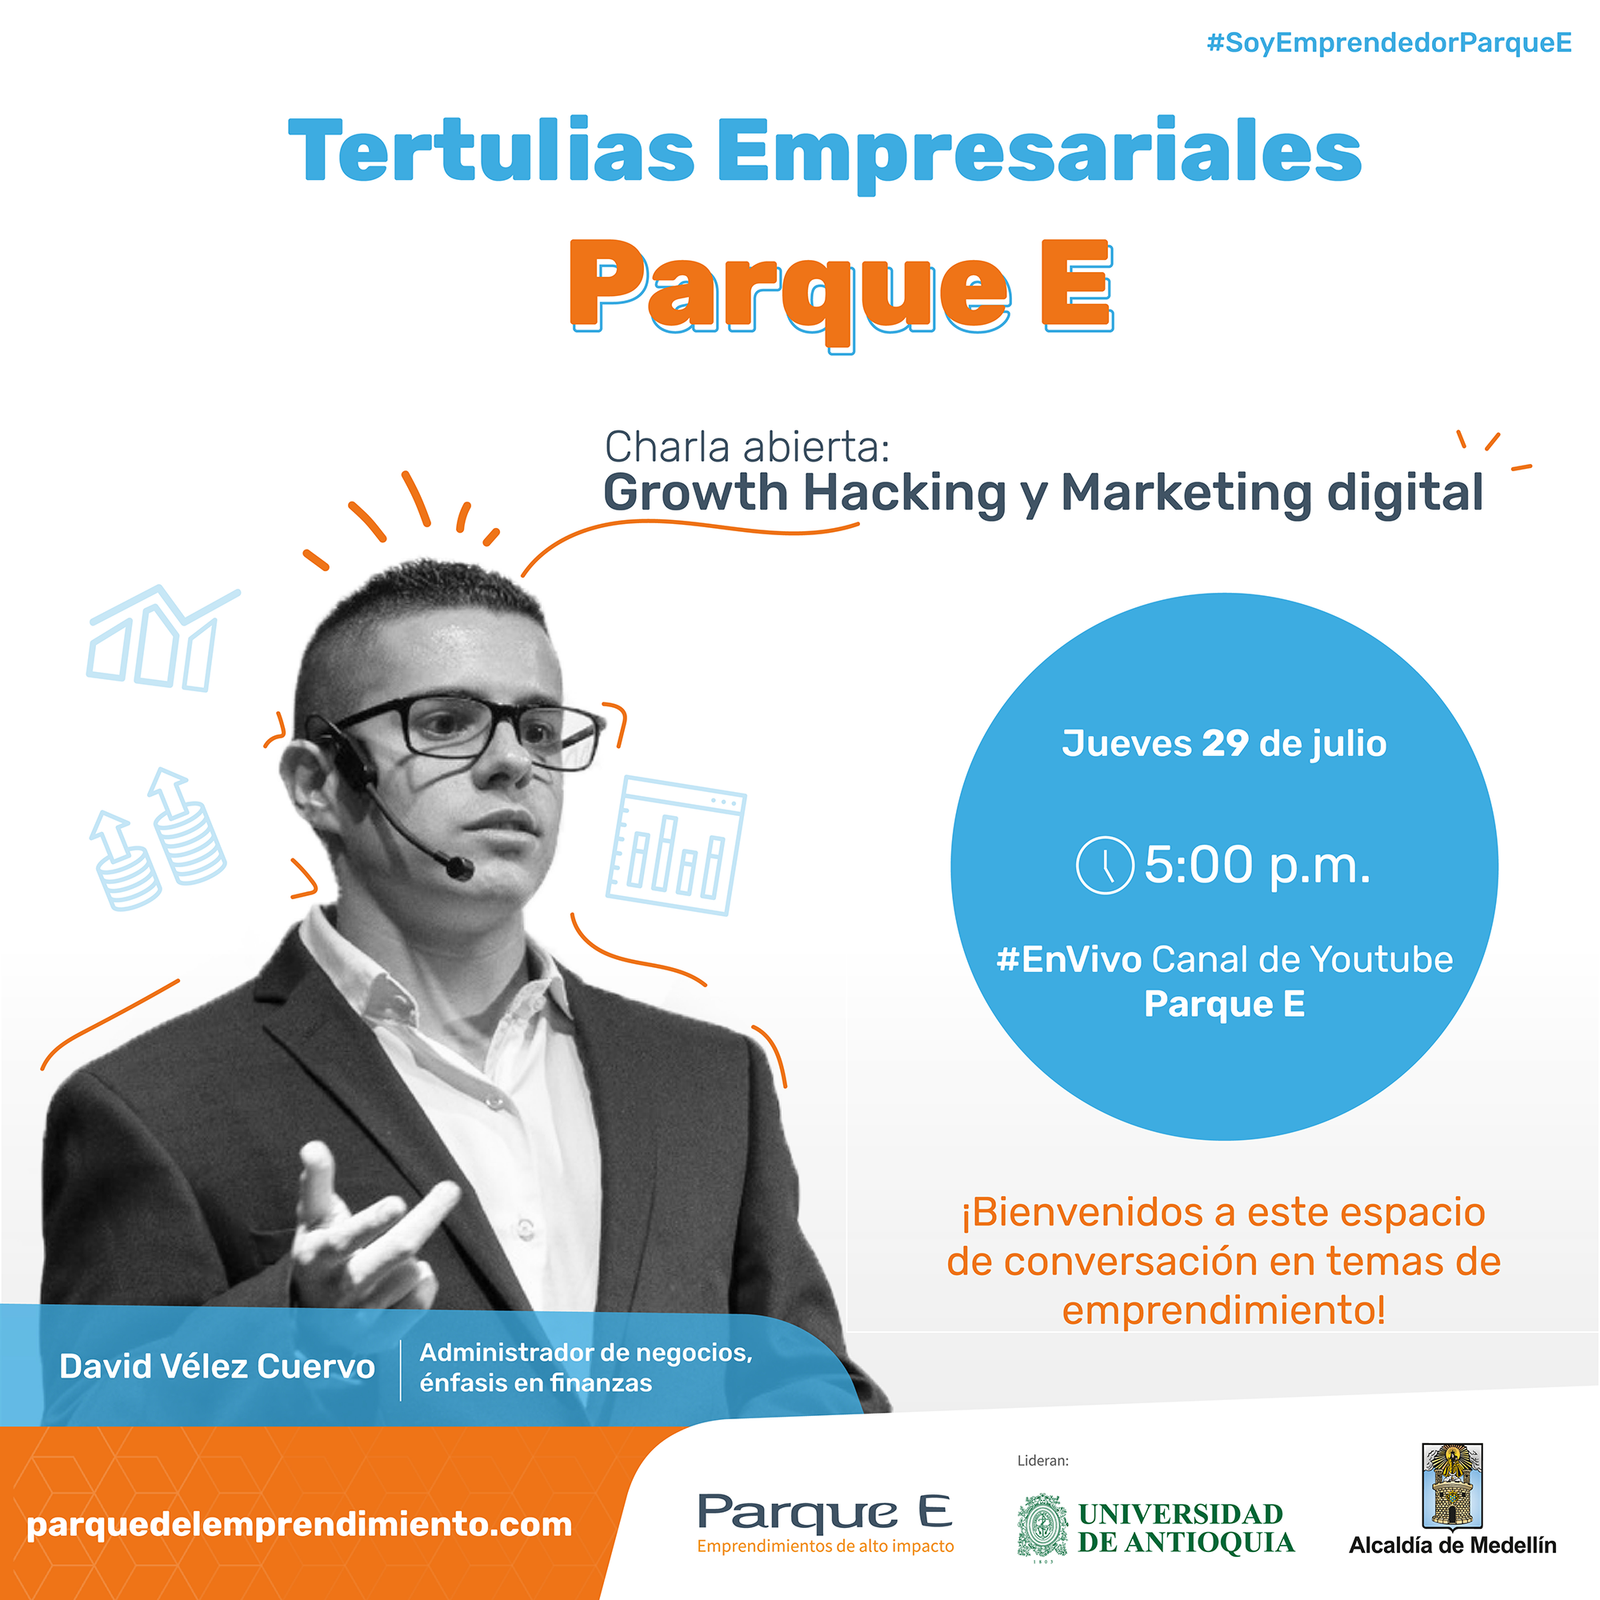 Tertulia Empresarial Parque E: Growth Haking y Marketing Digital